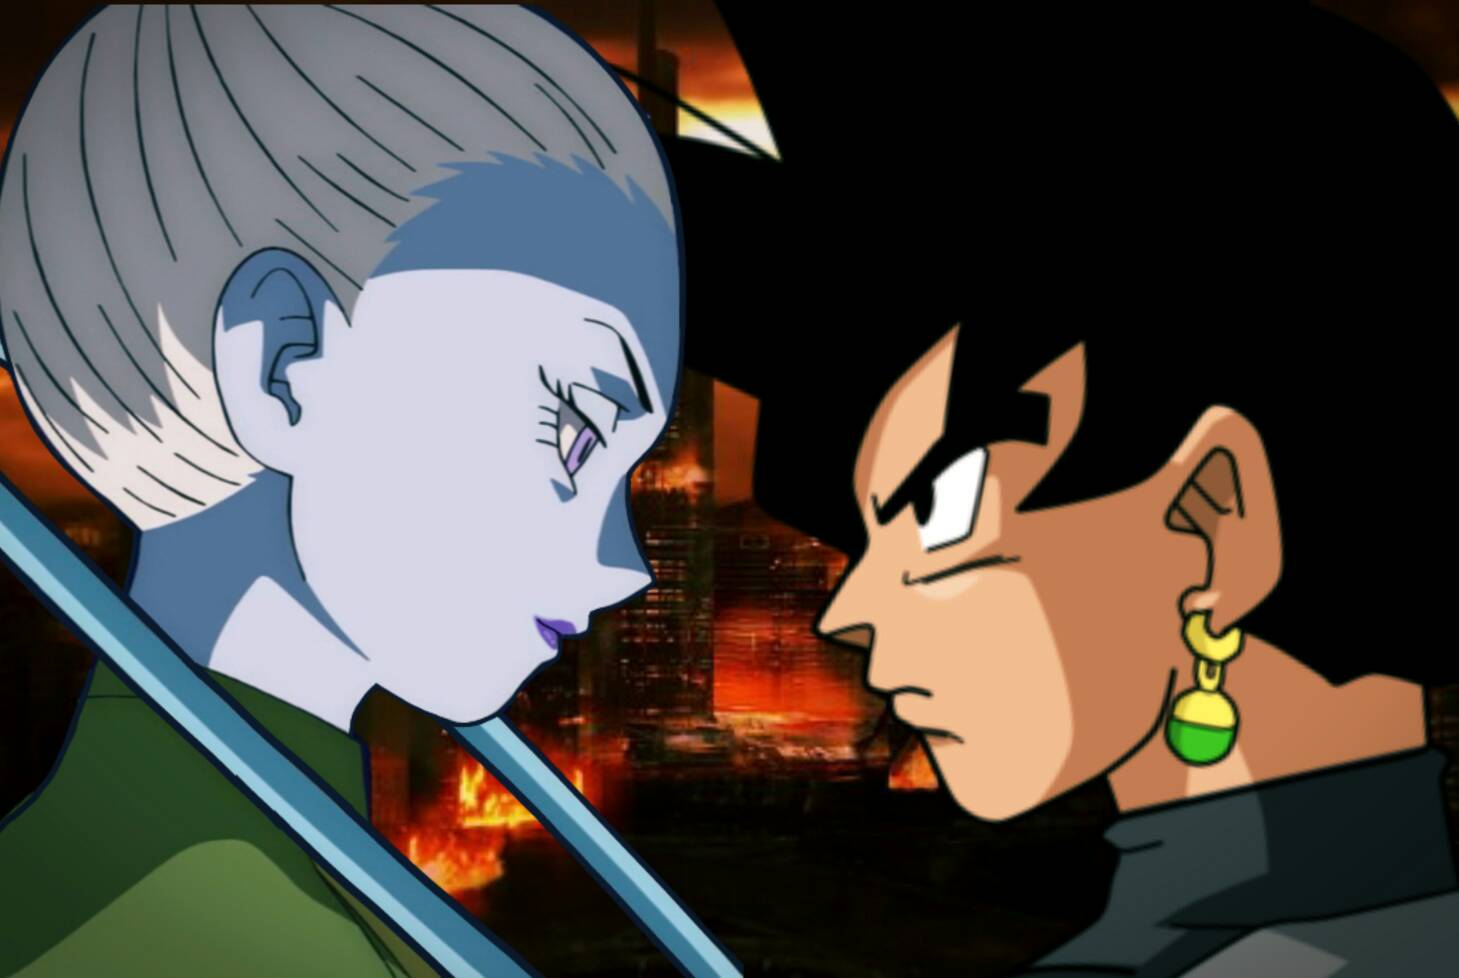 Ycass - Vendo Goku vs Goku Black